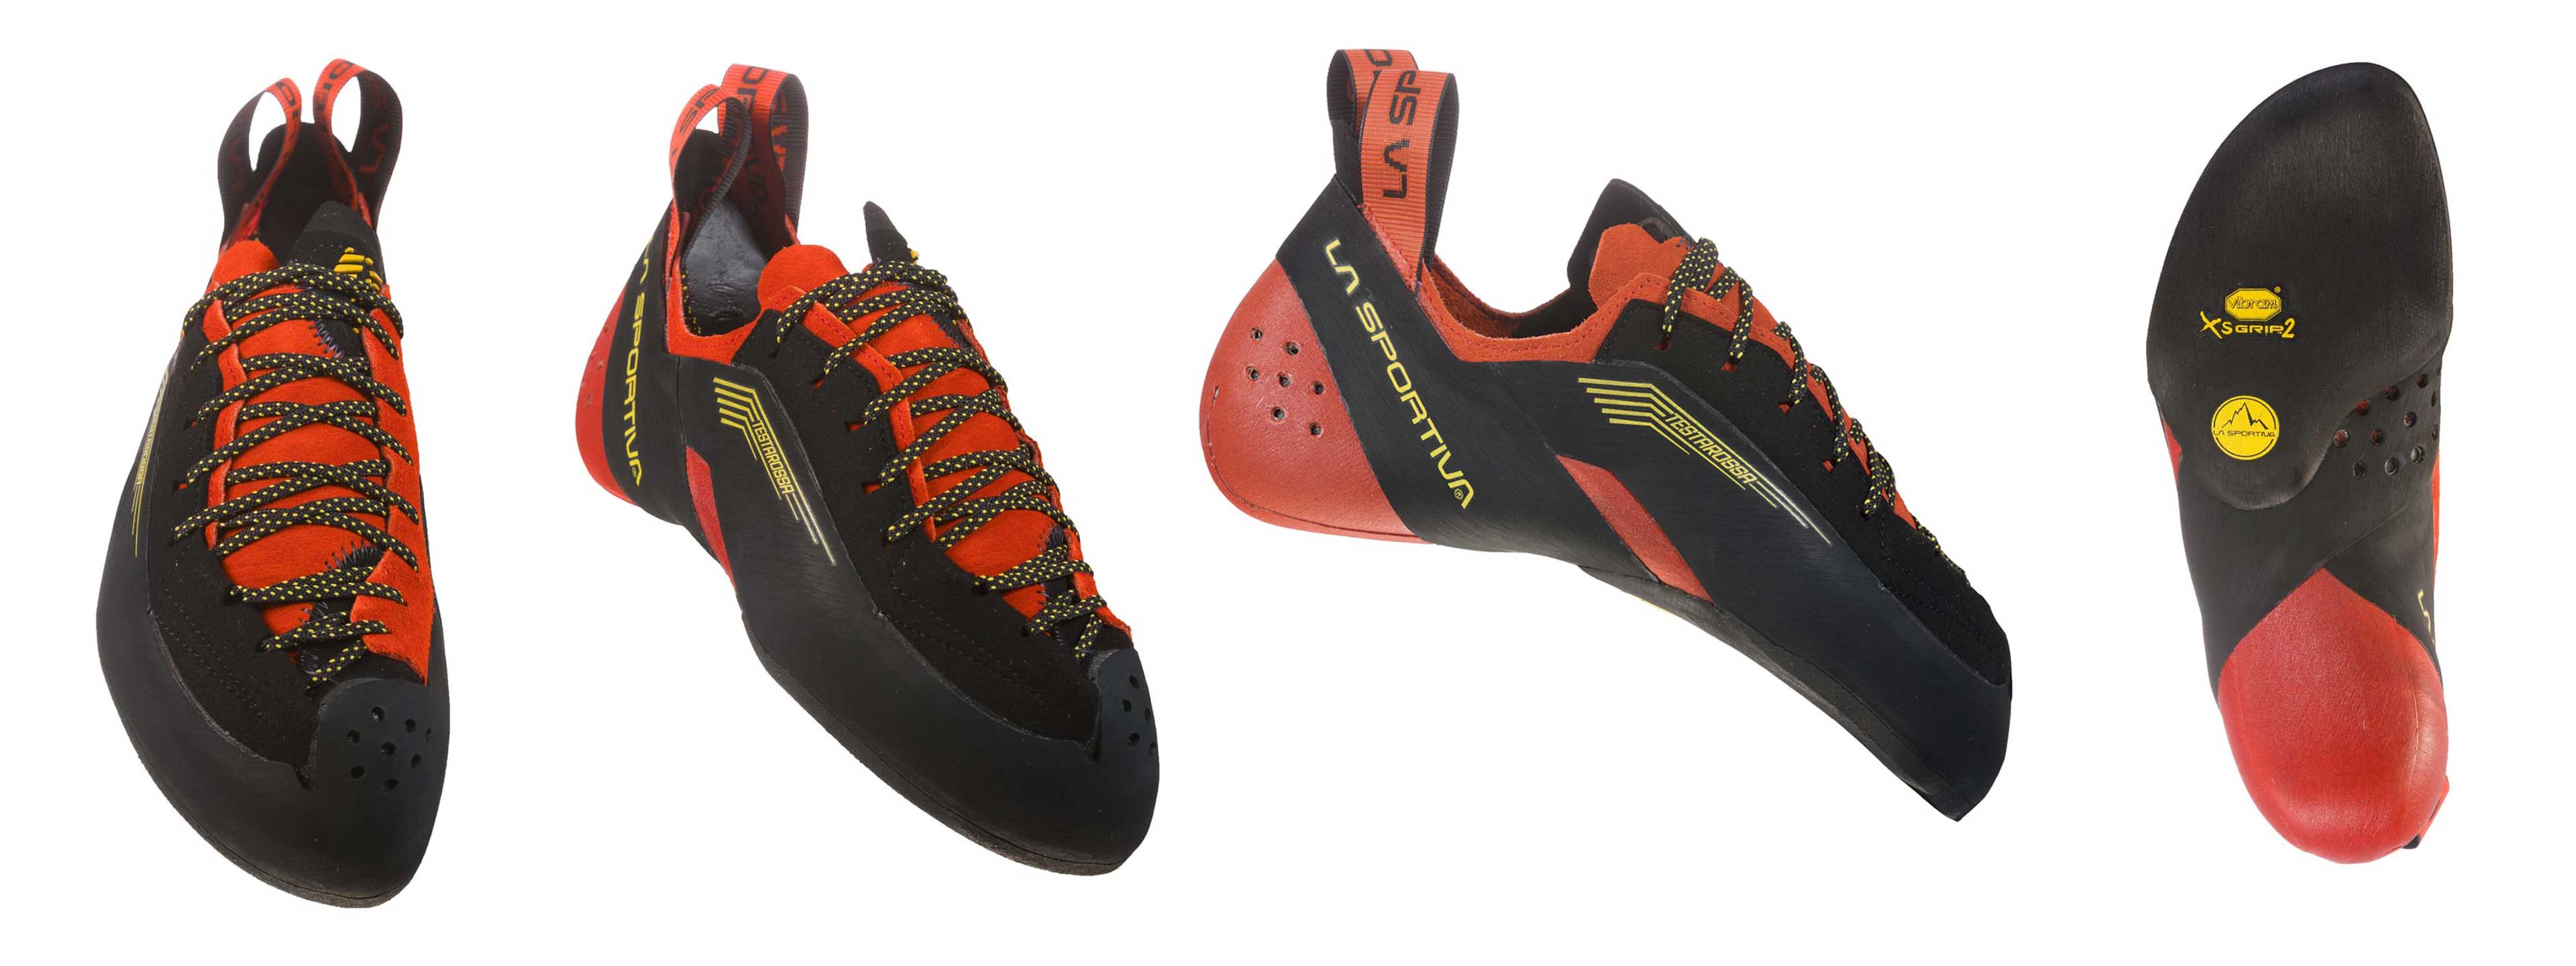 new la sportiva climbing shoes 2019